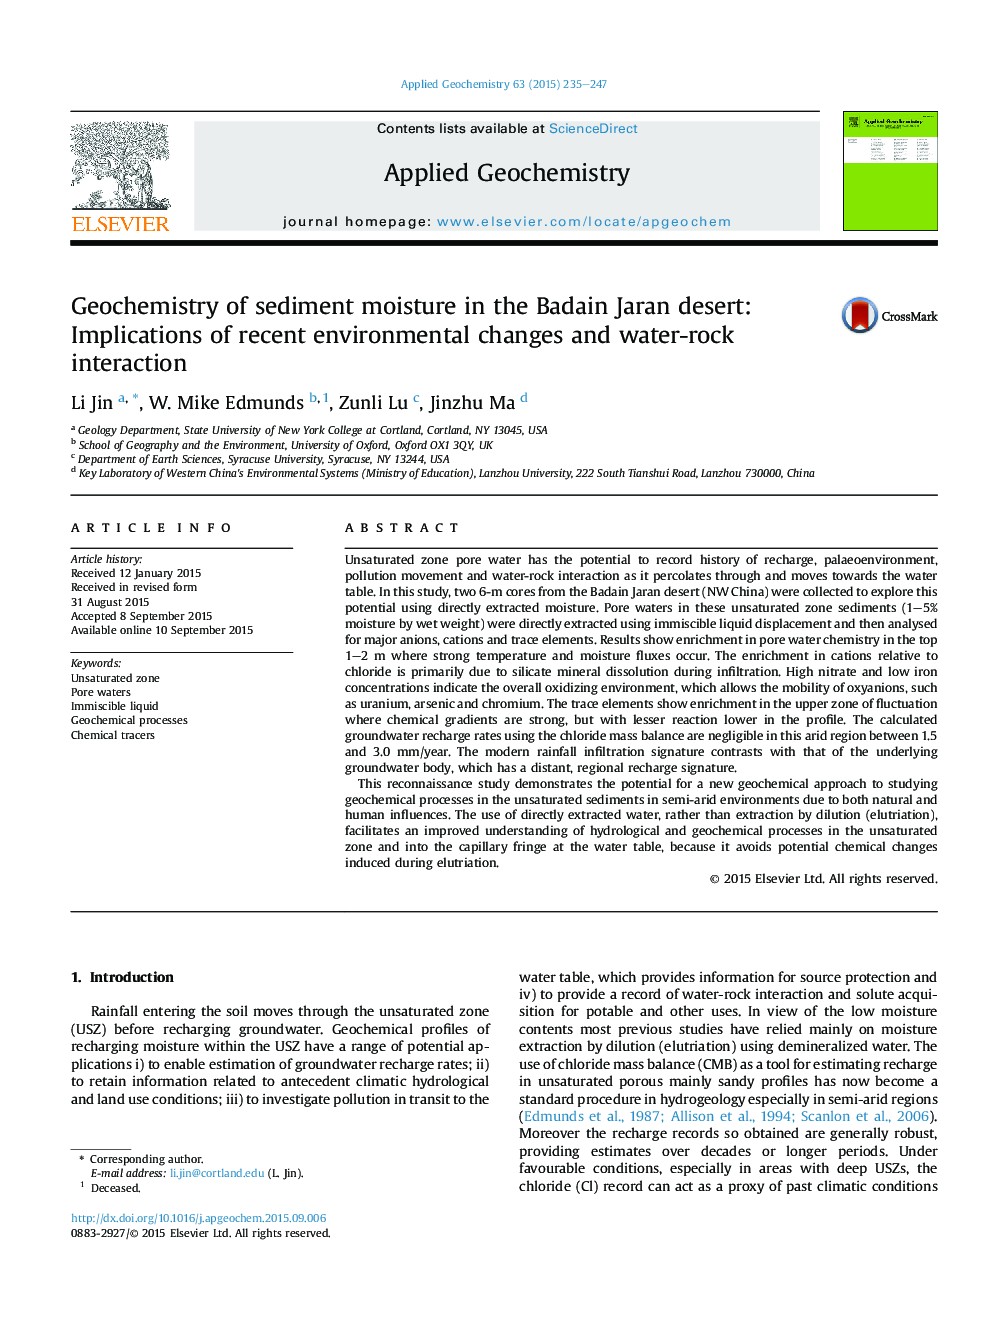 ژئوشیمی رطوبت رسوب در صحرای بادن یاران: تاثیرات تغییرات محیط زیست اخیر و تعامل آب و سنگ 